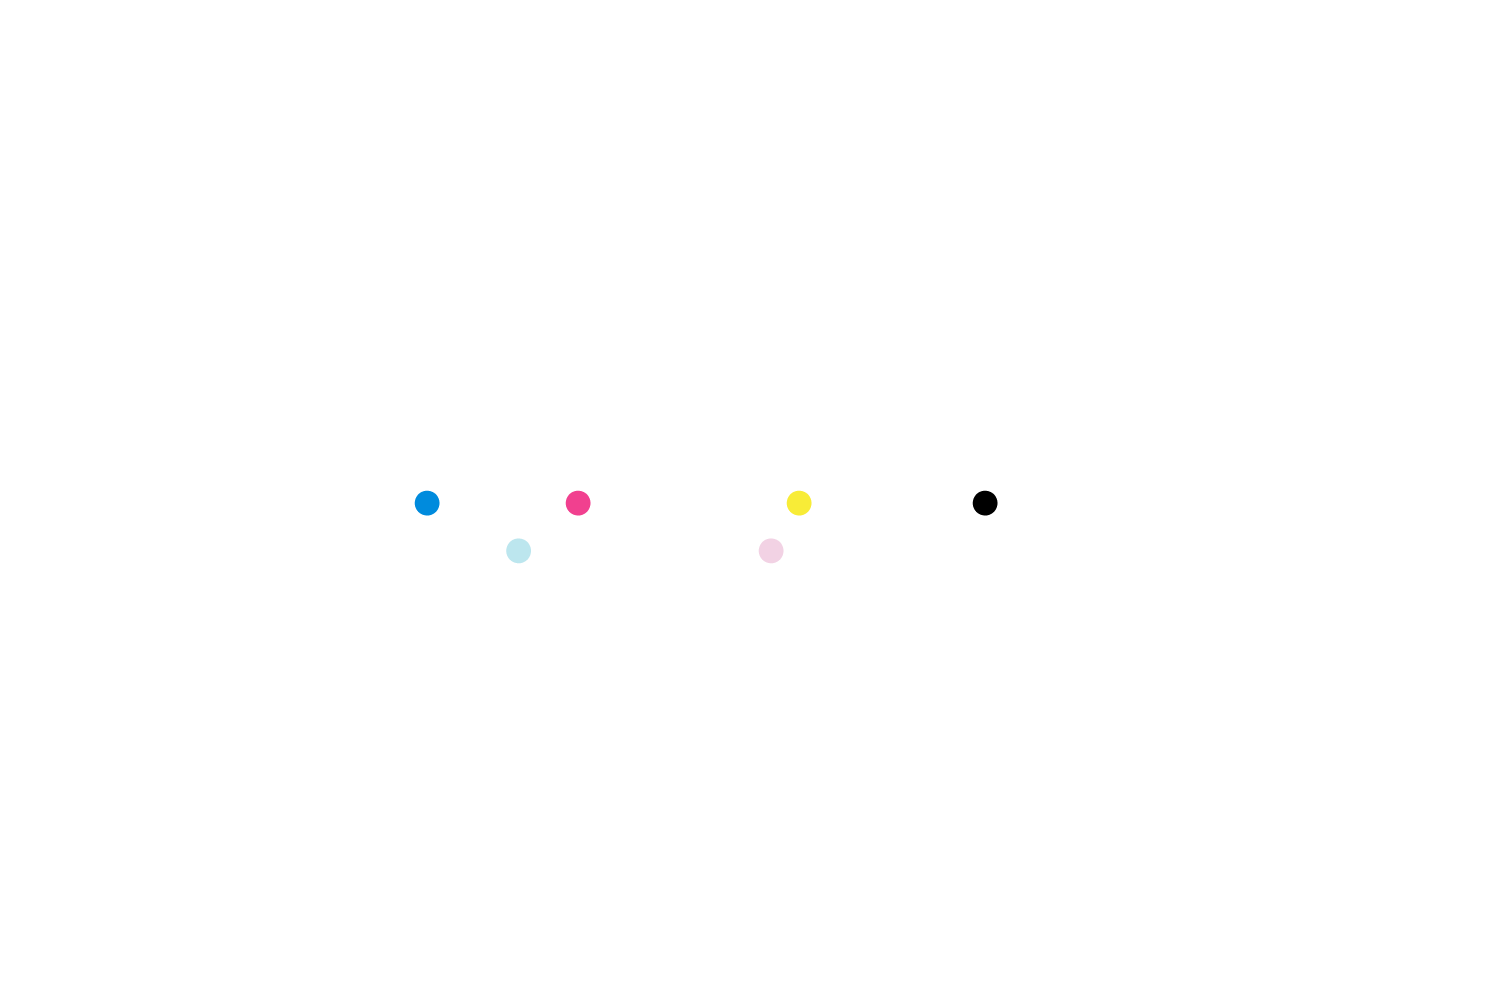 SIX DYE